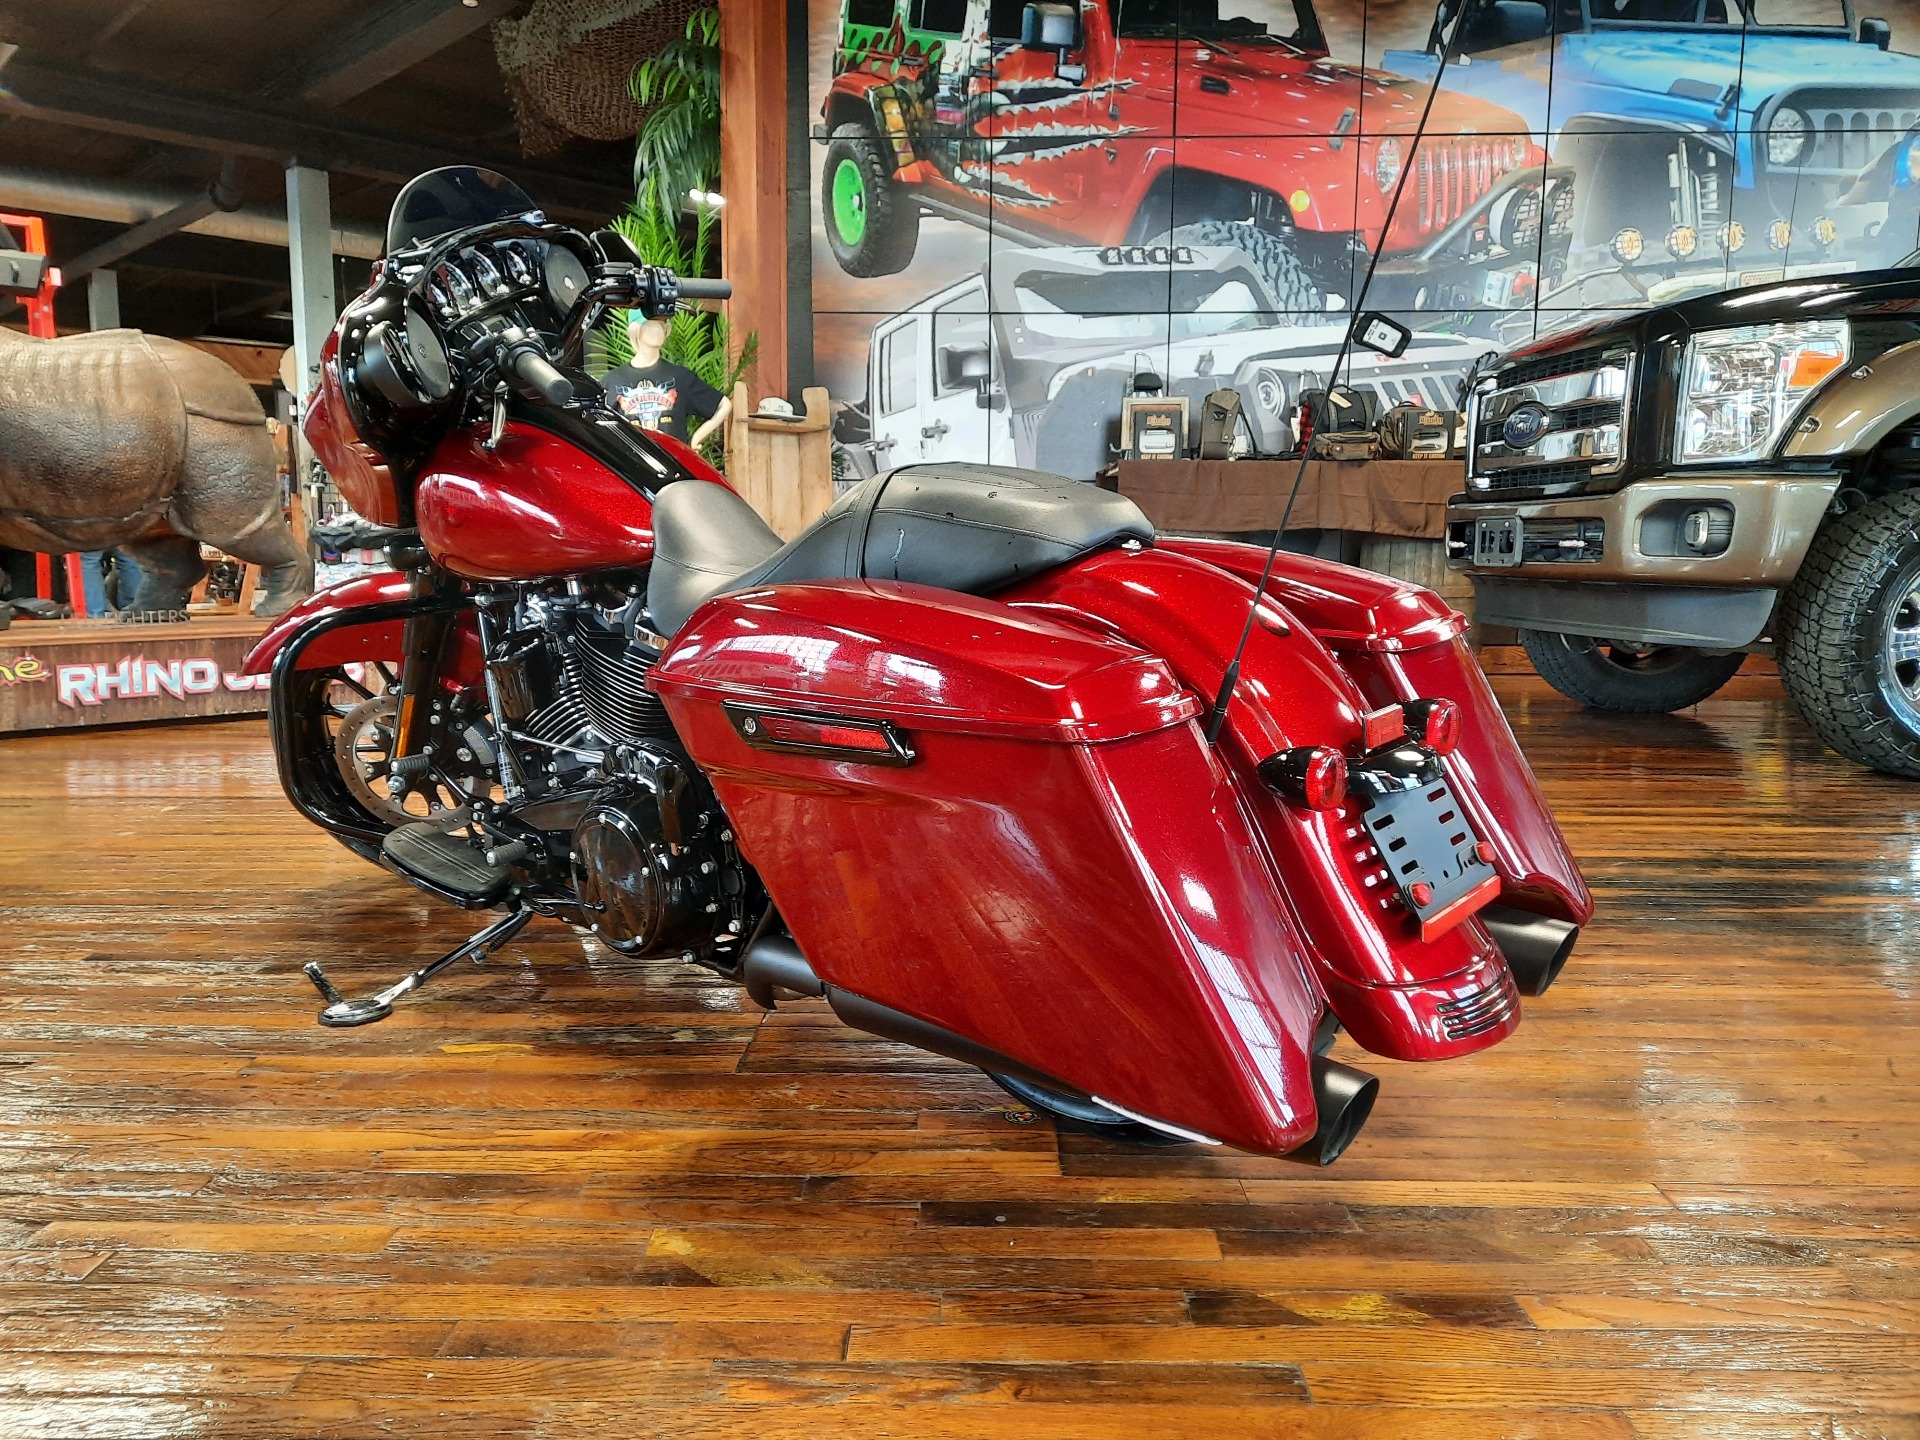 2018 Harley-Davidson Street Glide® Special in Laurel, Mississippi - Photo 4